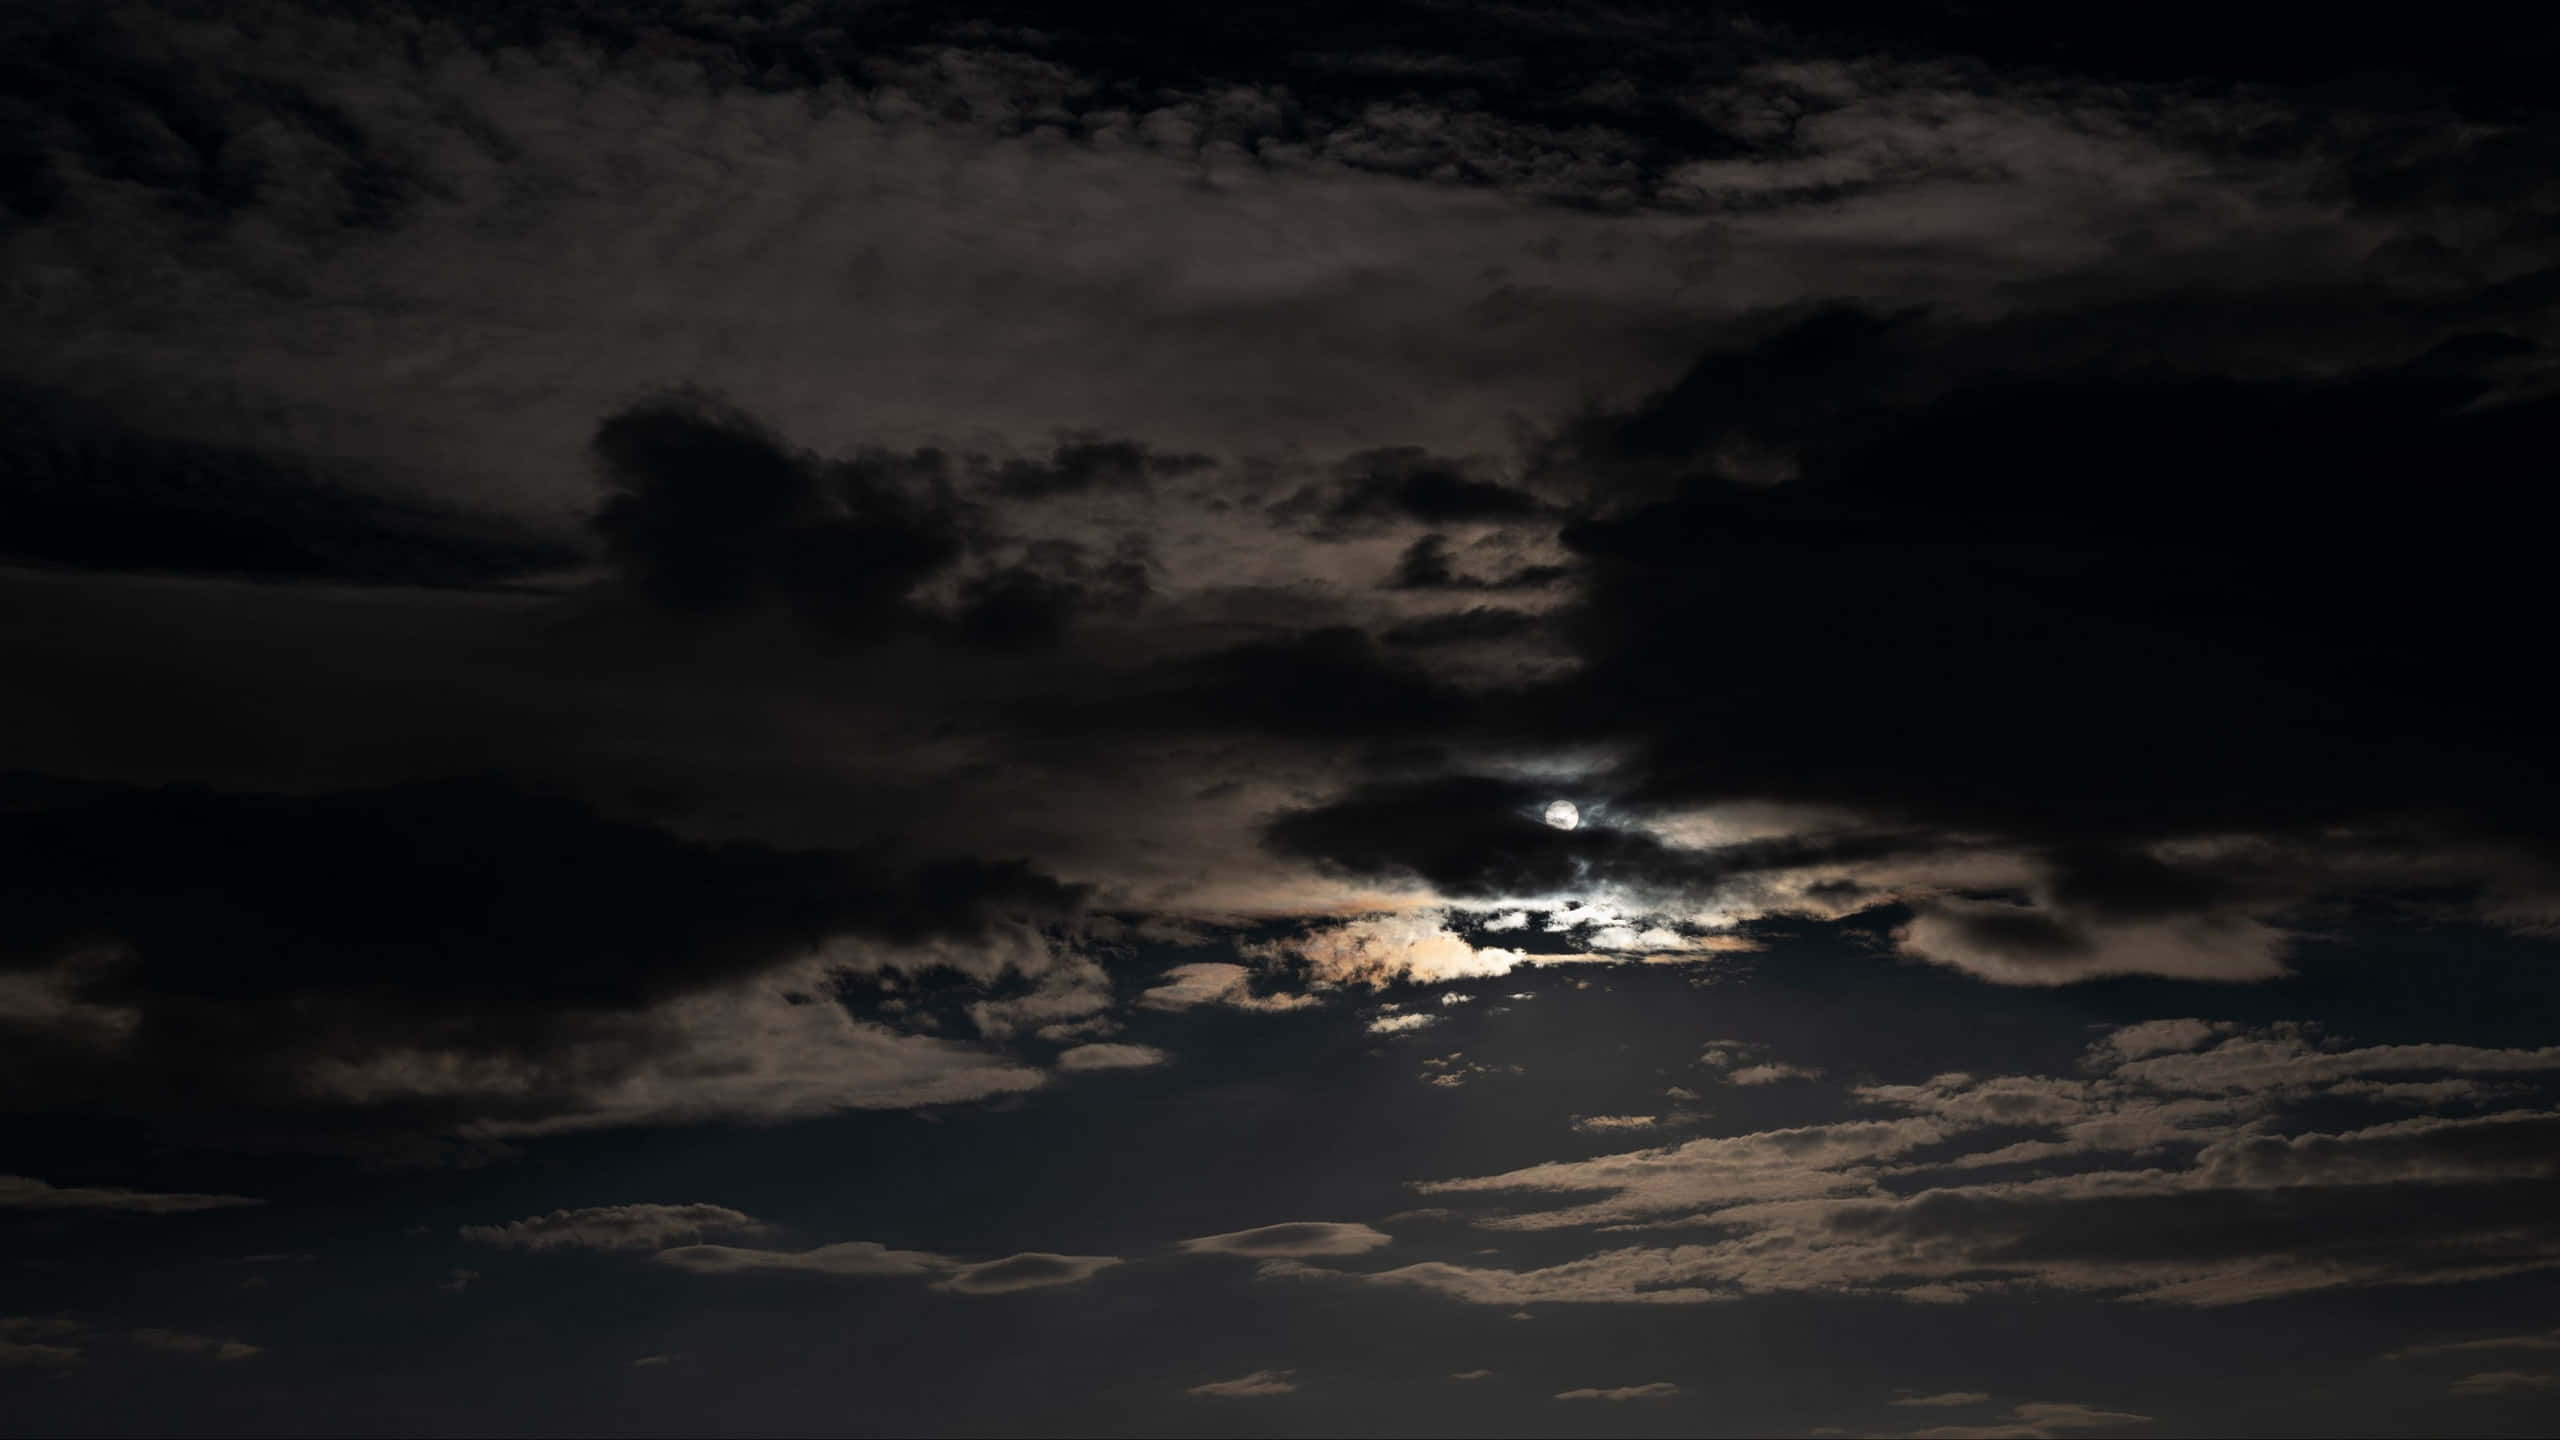 Mysterious Dark Night Sky